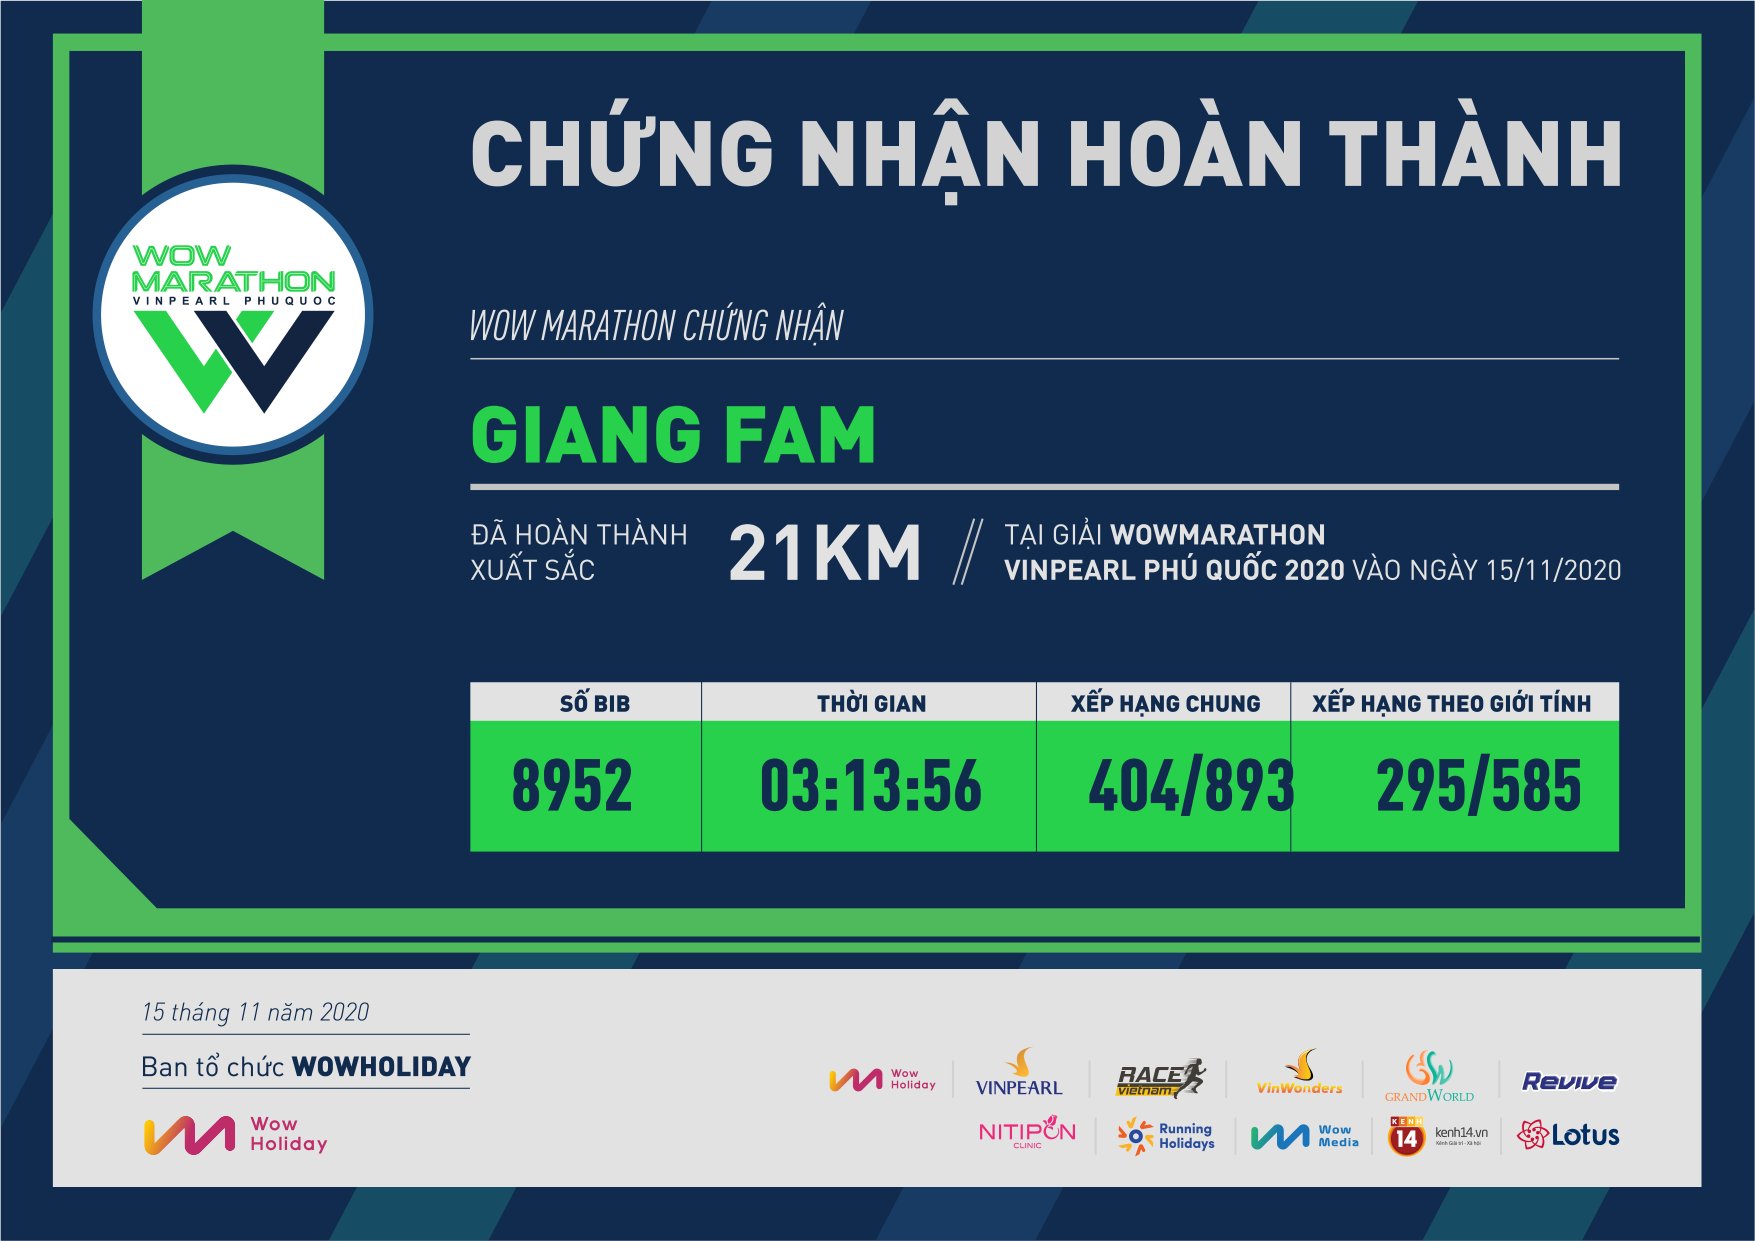 8952 - Giang Fam